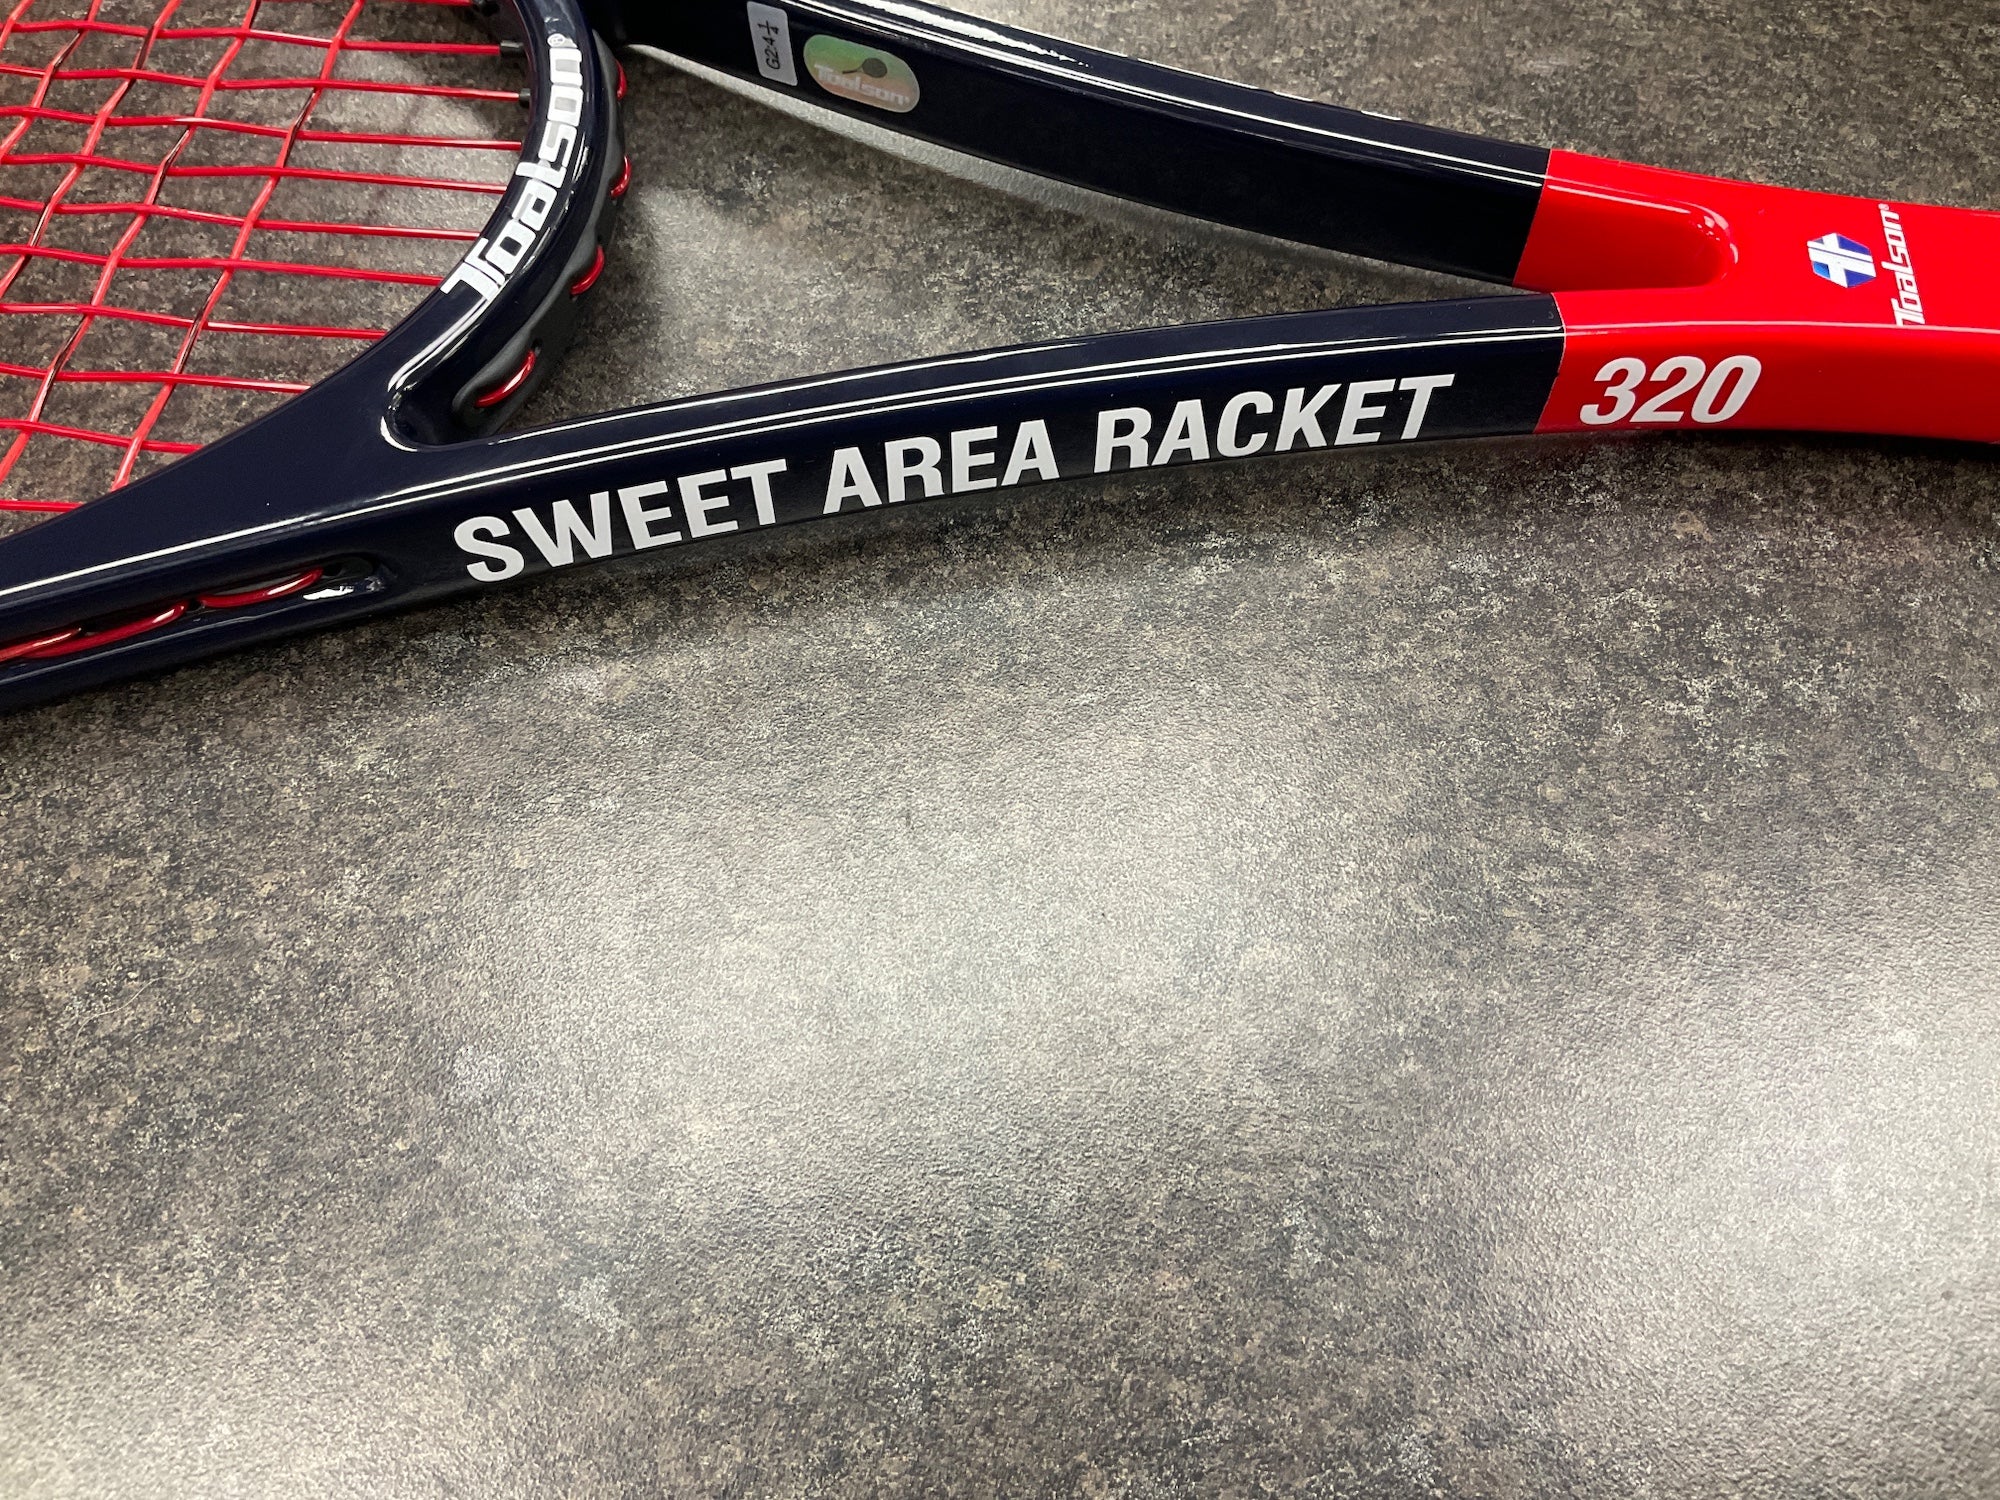 Toalson Sweet Area Racket 320 | SidelineSwap